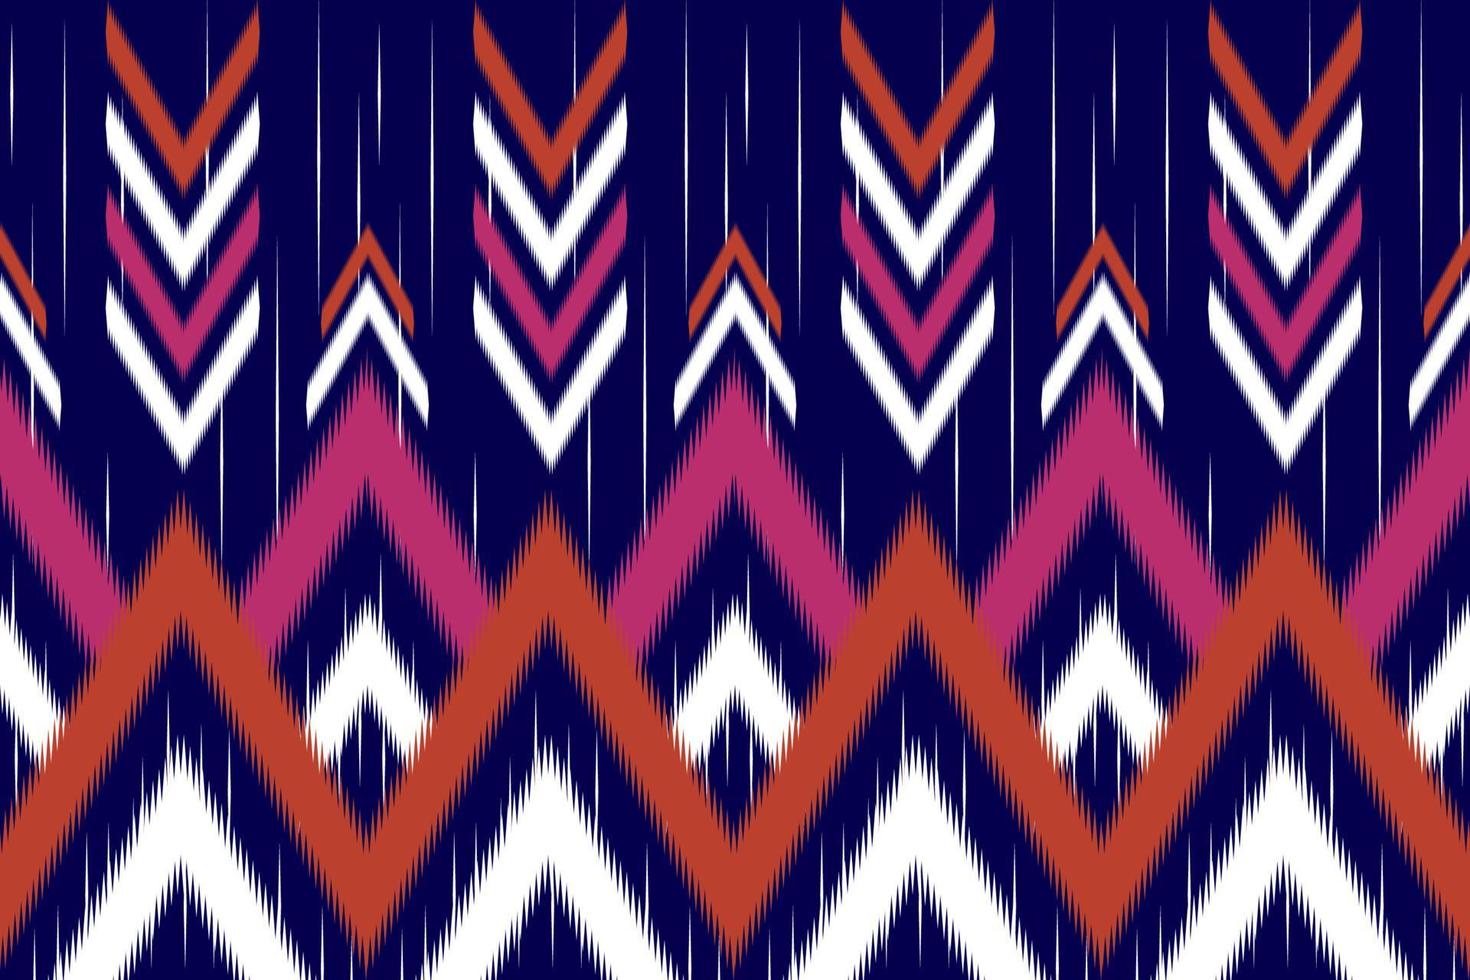 padrão étnico ikat chevron. estilo tribal tradicional. design para plano de fundo,ilustração,textura,tecido,batik,vestuário,embrulho,papel de parede,tapete,bordado vetor